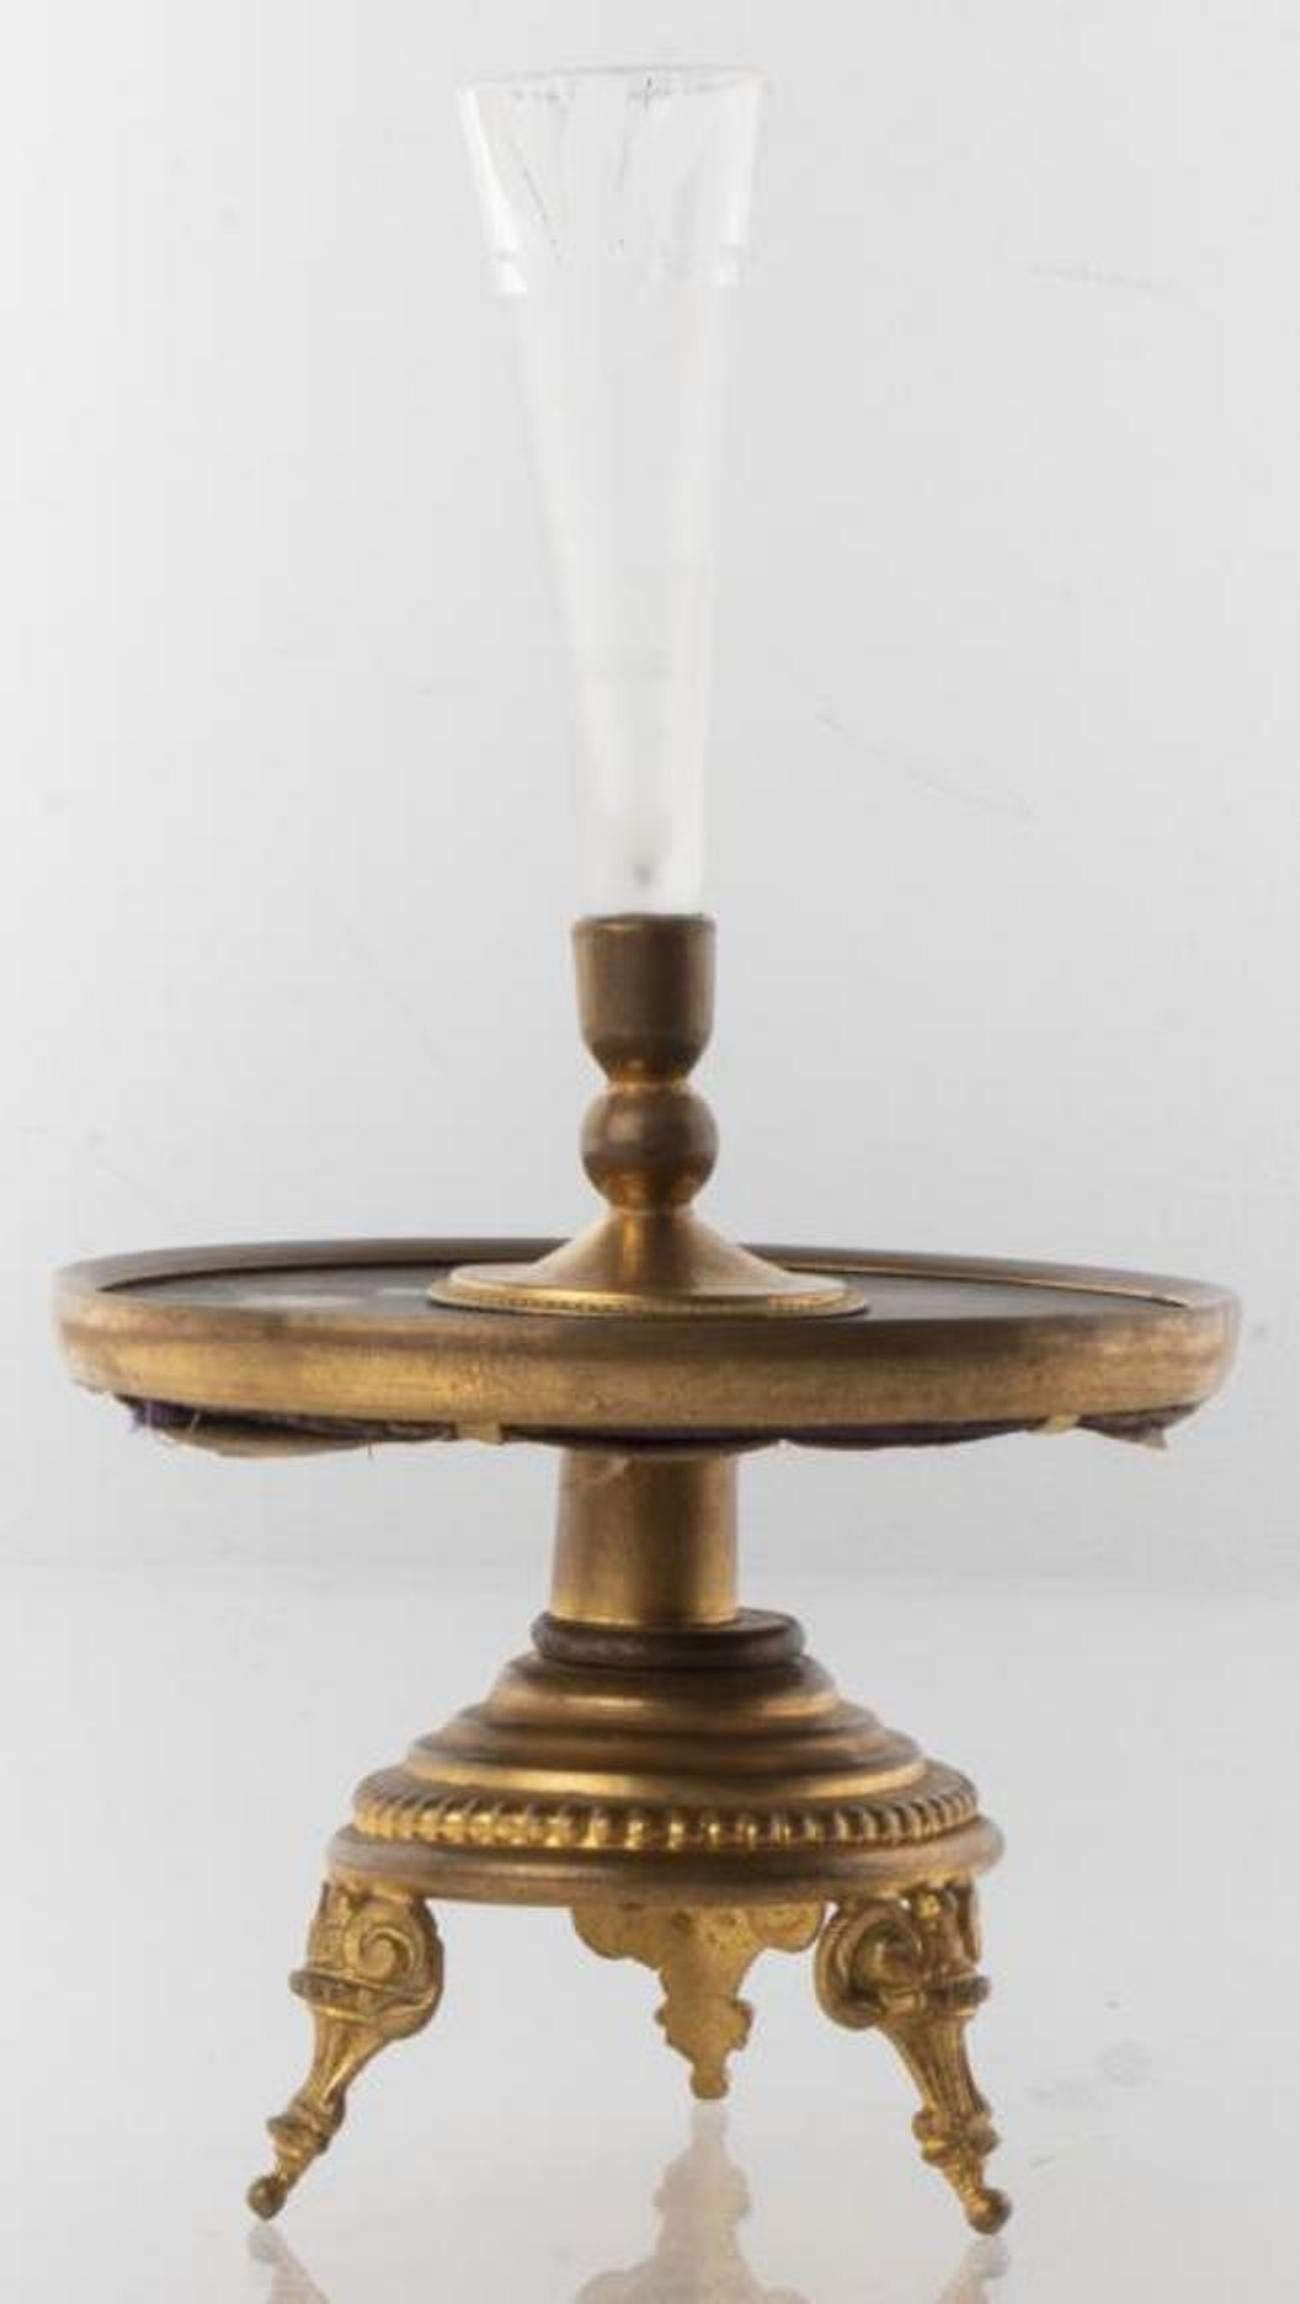 Kerzenhalter im neoklassischen Stil mit konischem Milchglashalter, Tropfschale mit Blumenmotiv aus Pietra-Dura-Einlegearbeit und dreibeinigem Messingfuß. 7,5